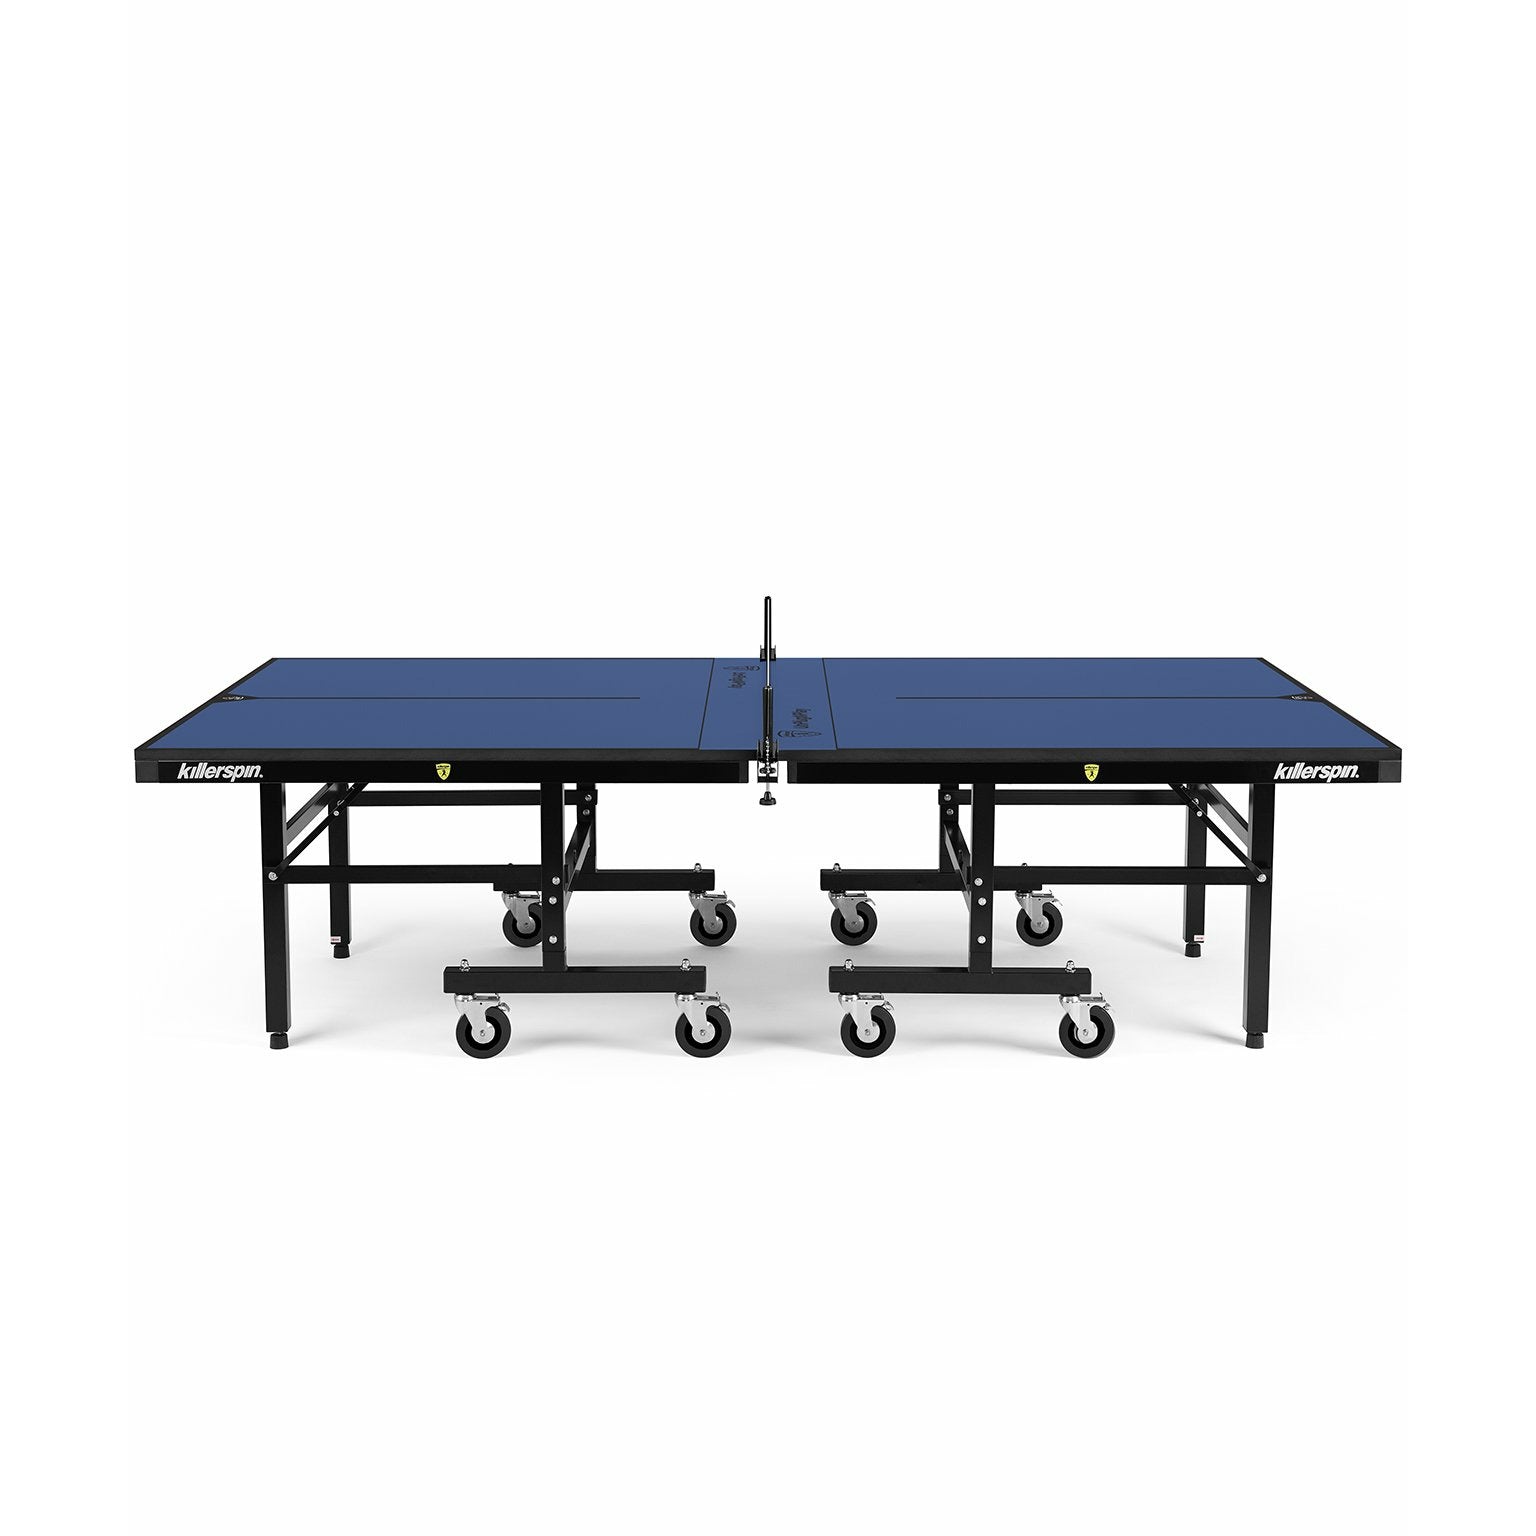 Killerspin MyT 415 Max - DeepBlu Table Tennis Table 2